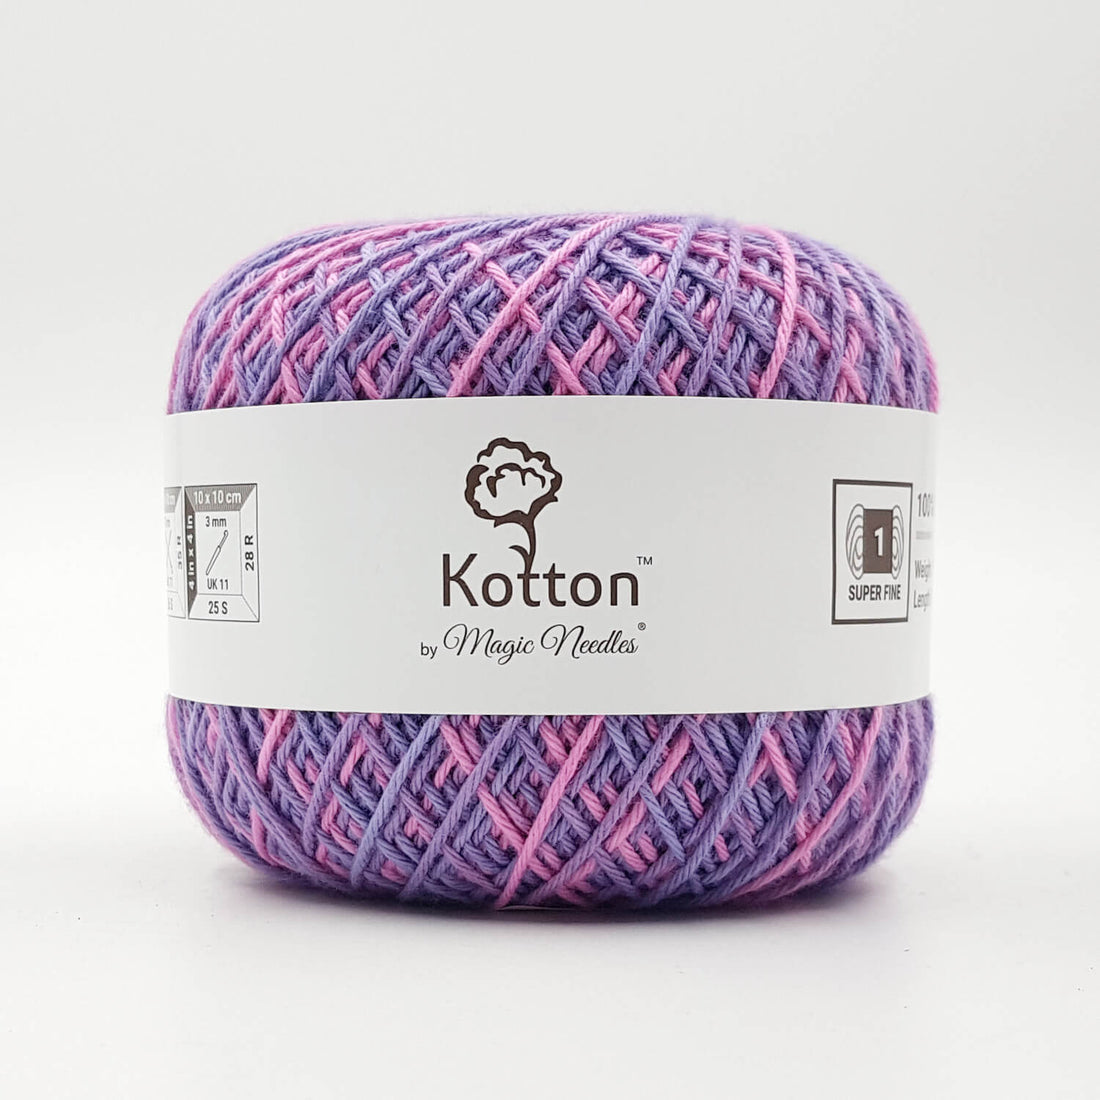 Kotton 4 ply Cotton Yarn 150 g - Multi Color 15